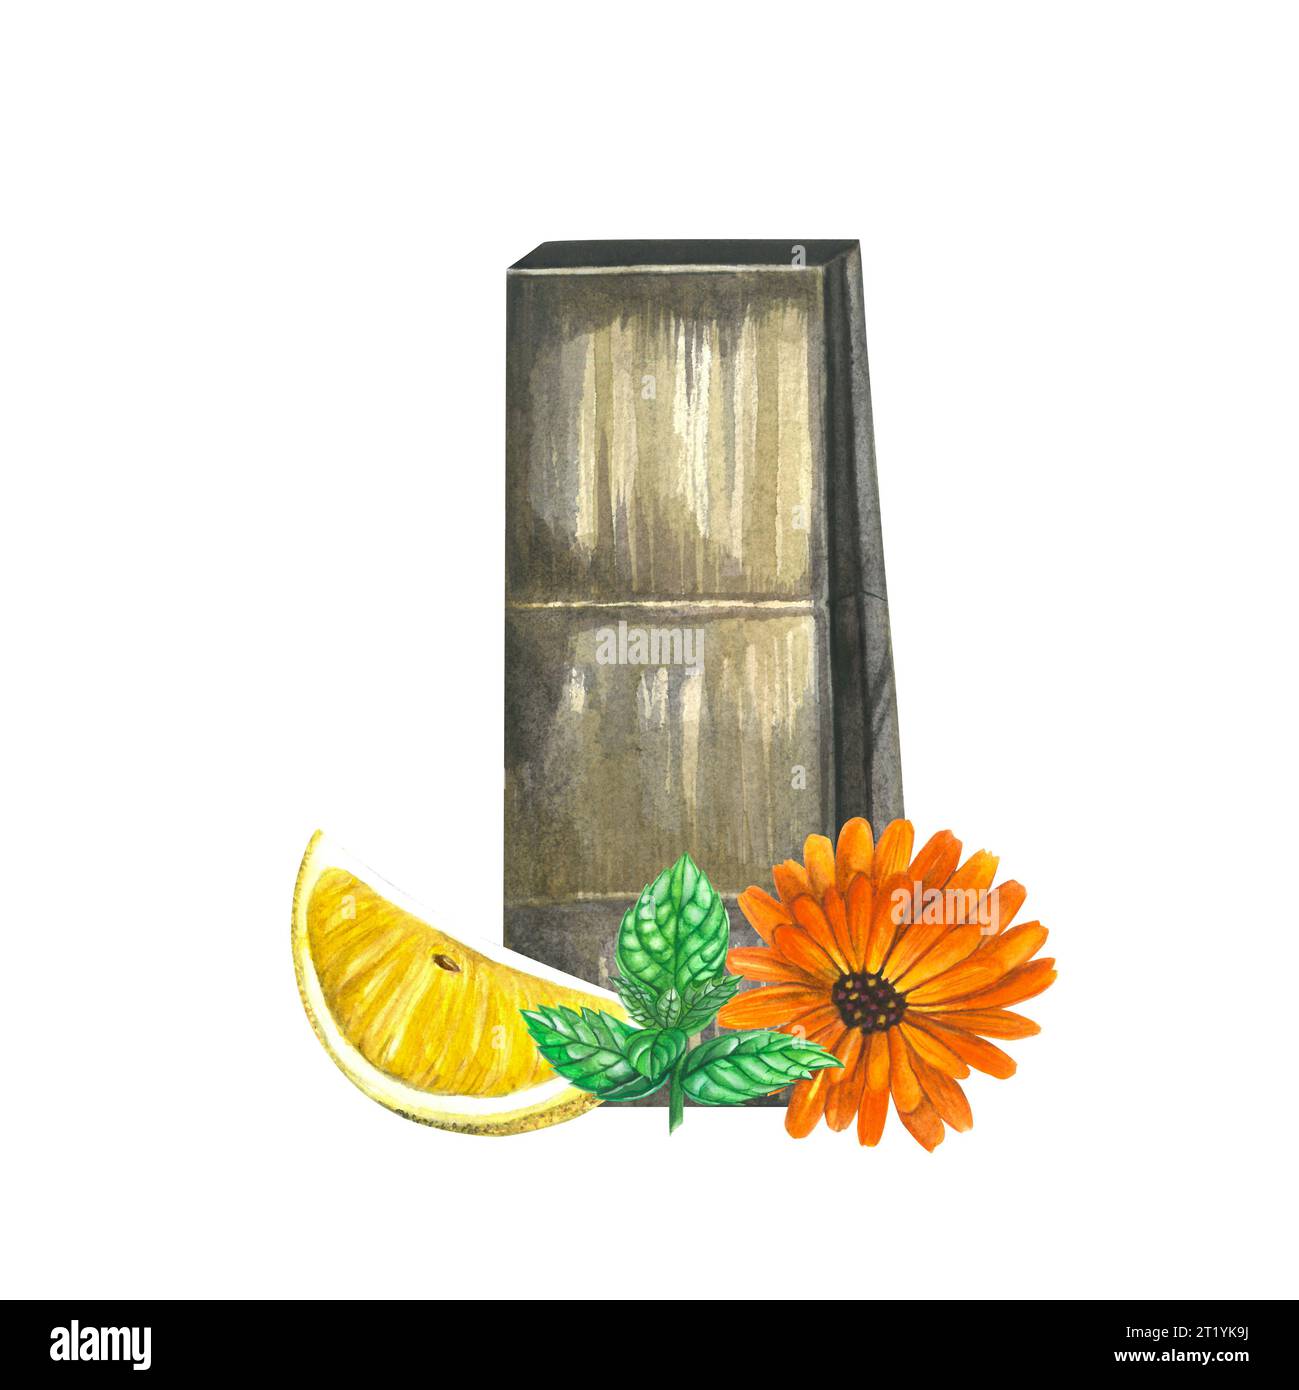 Illustration à l'aquarelle d'un sac en papier de thé, citron, menthe et calendula. Isolé sur fond blanc, dessiné à la main Banque D'Images